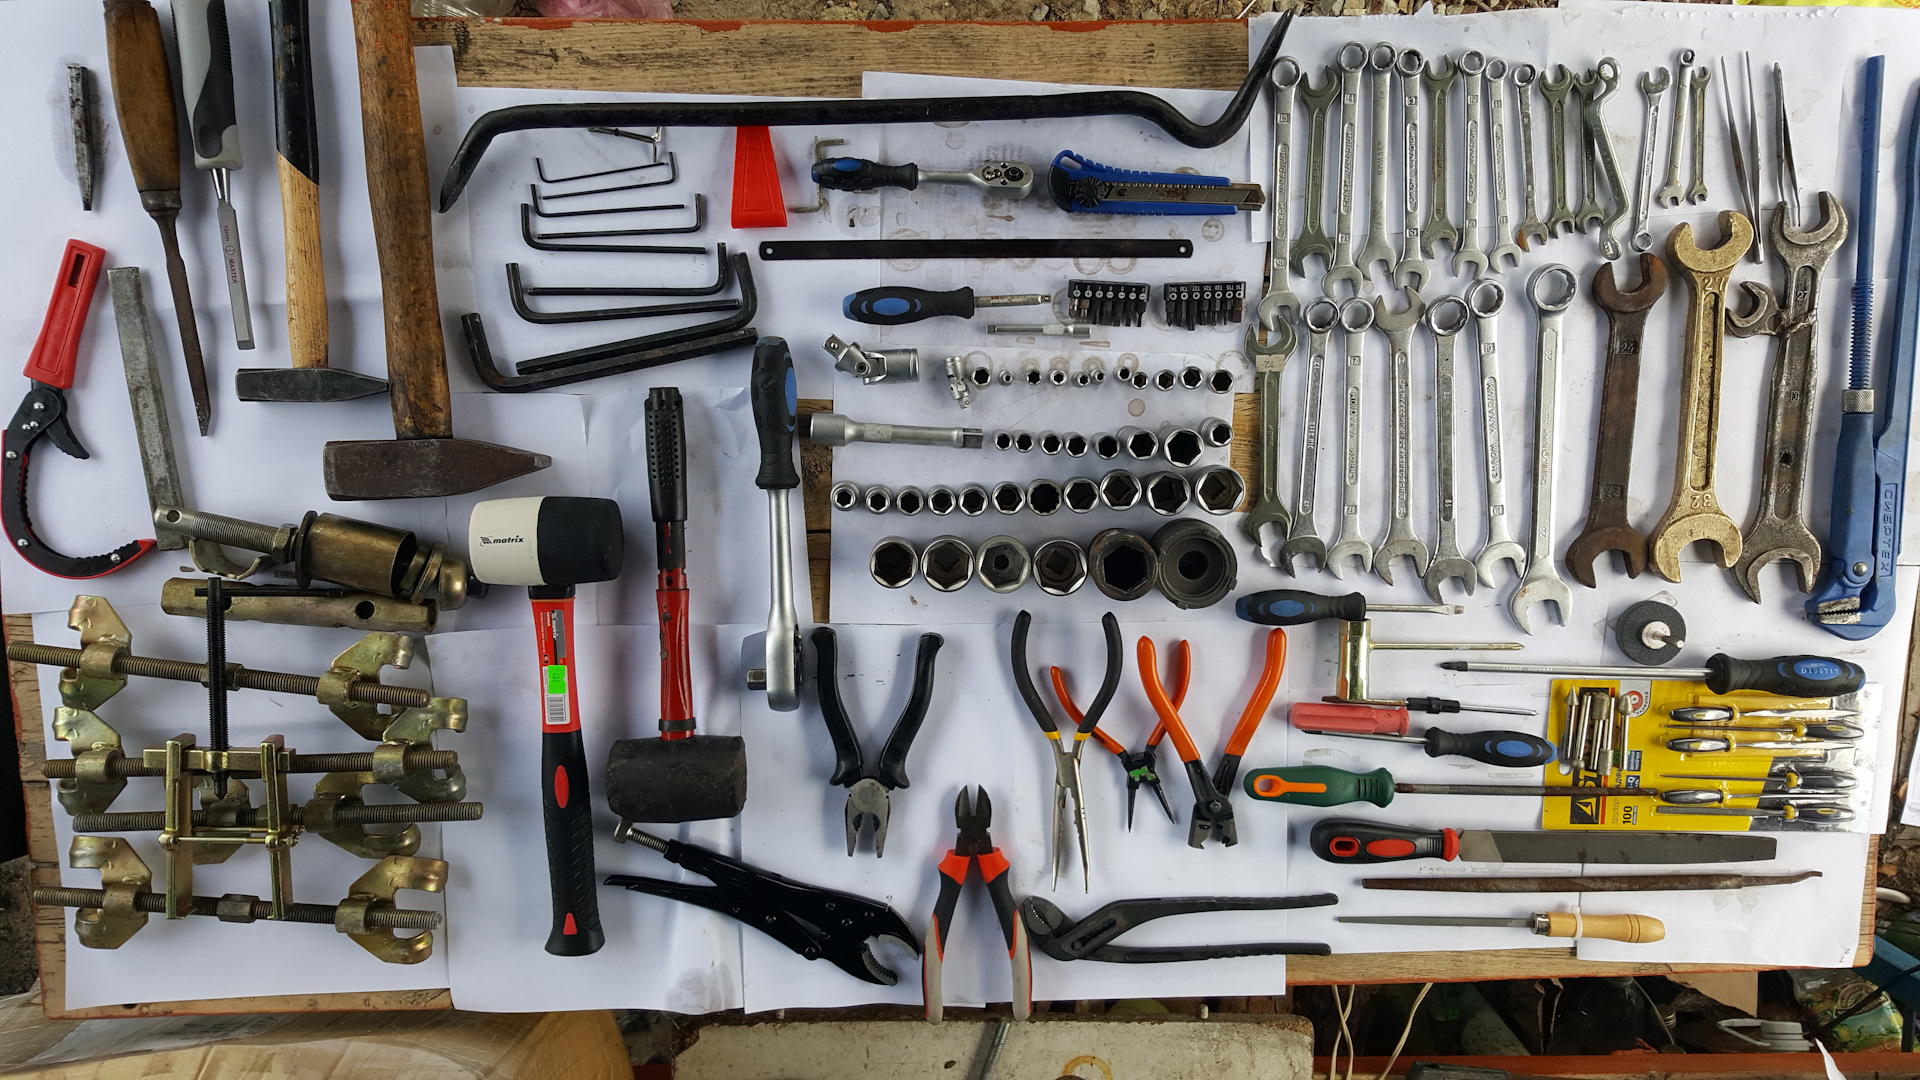 Tools day. Набор инструментов для Нивы Шевроле. Инструменты для ремонта. Старые слесарные инструменты. Металлические инструменты.